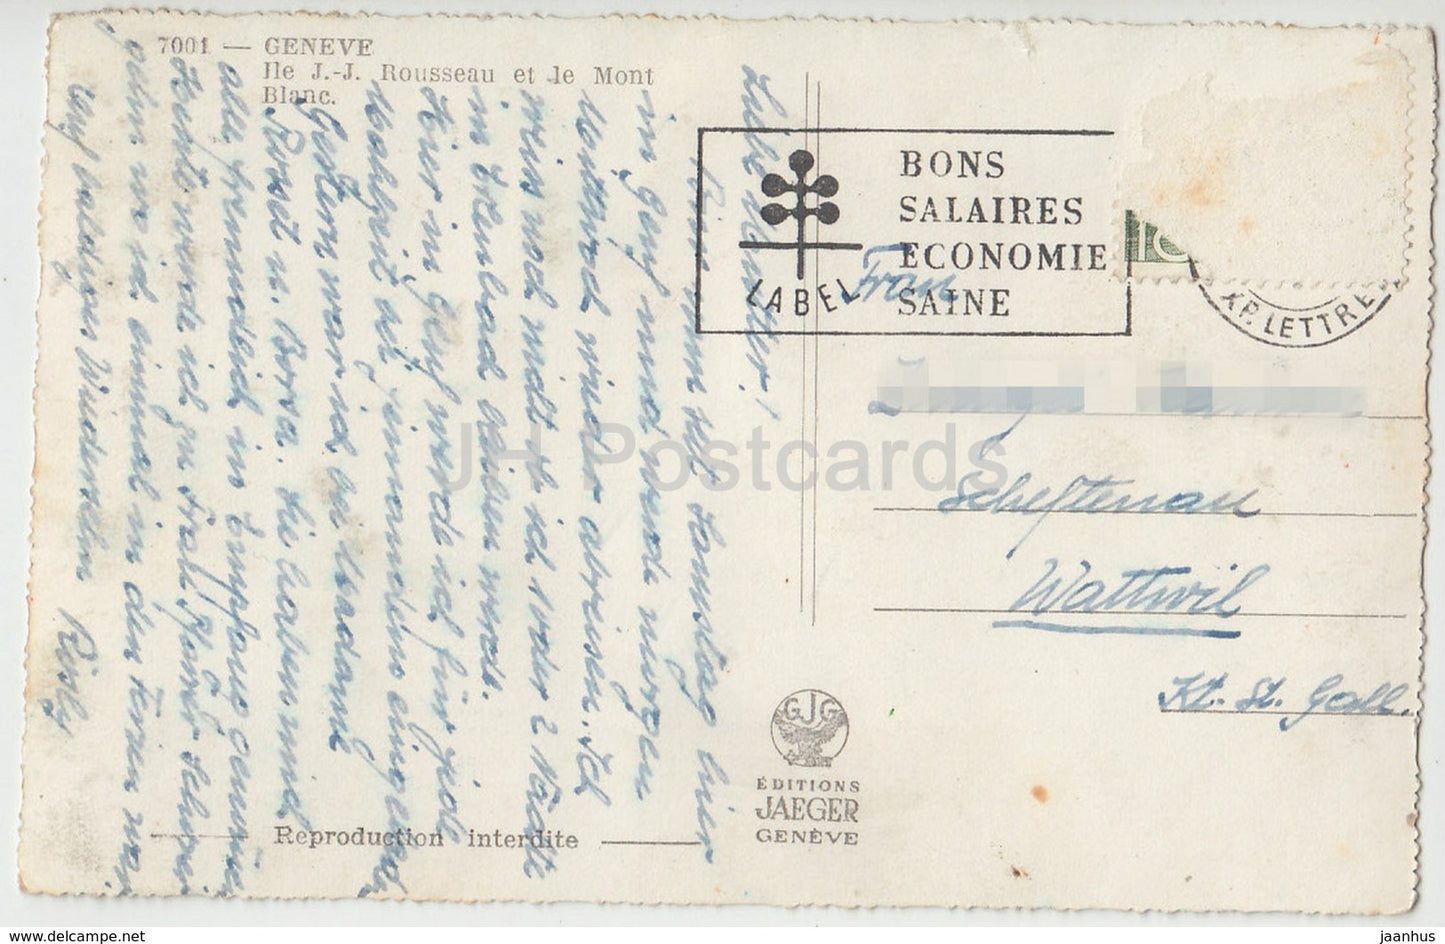 Geneve - Geneva -  Ile J.-J. Rousseau et le Mont Blanc - 7001 - Switzerland - old postcard - used